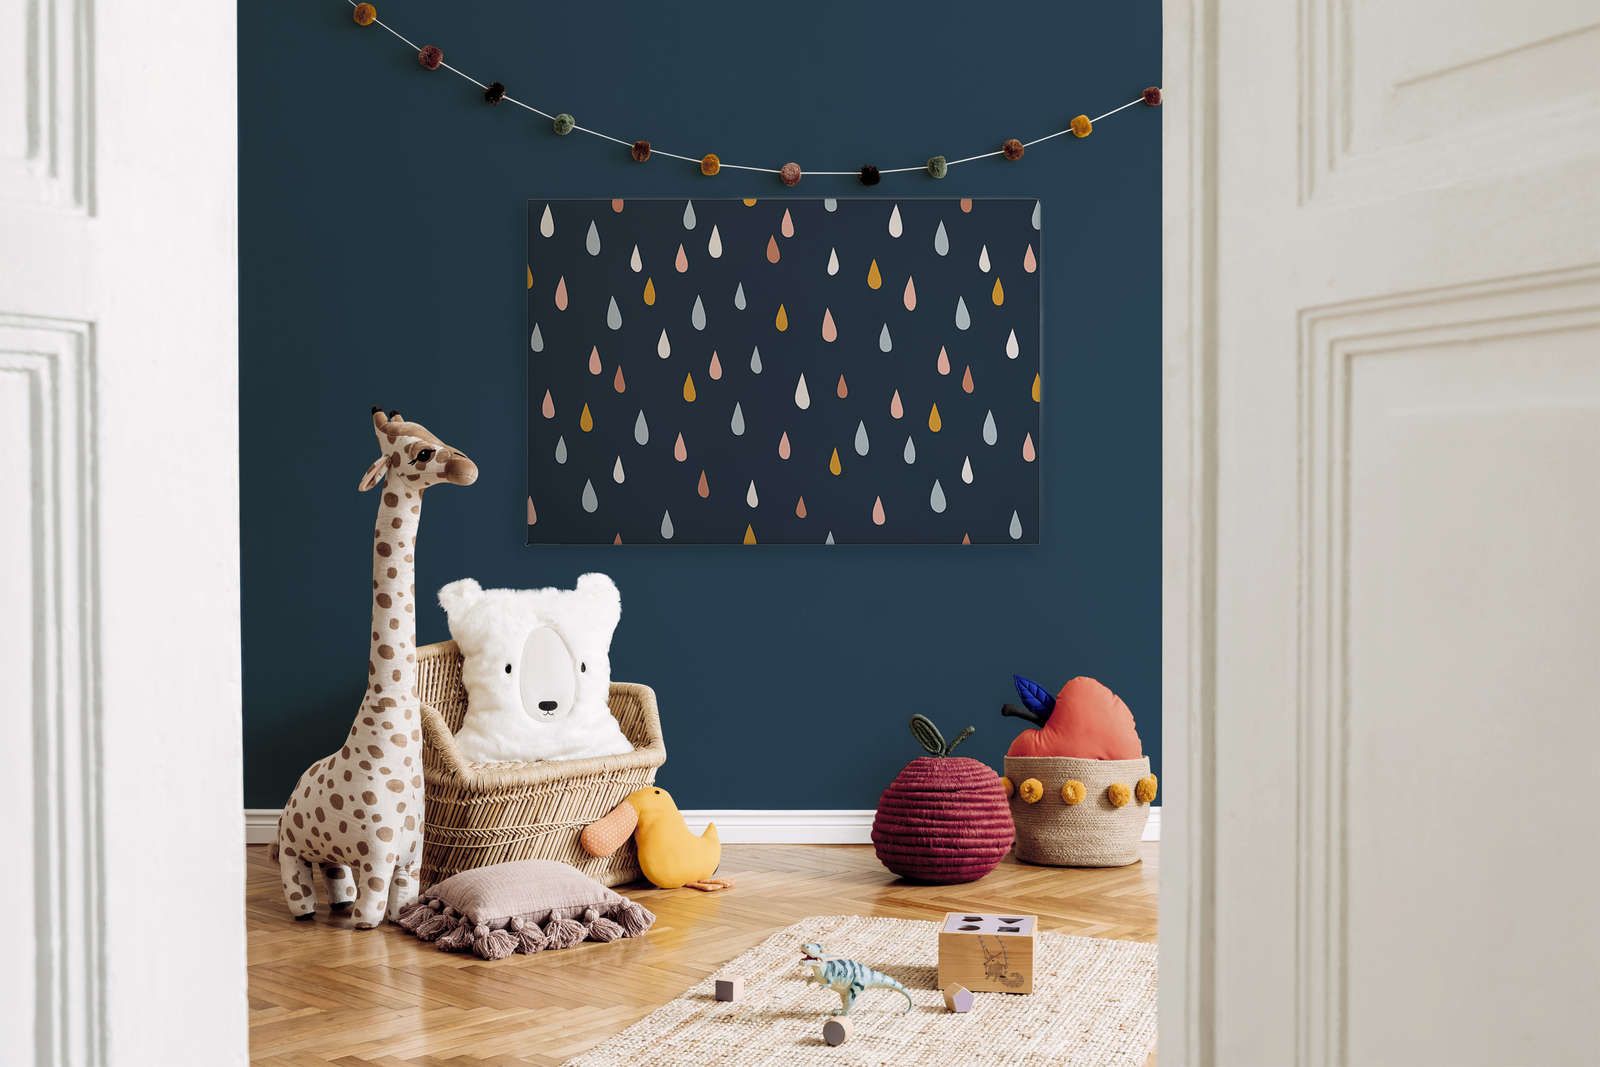             Leinwand fürs Kinderzimmer mit bunten Tropfen – 120 cm x 80 cm
        